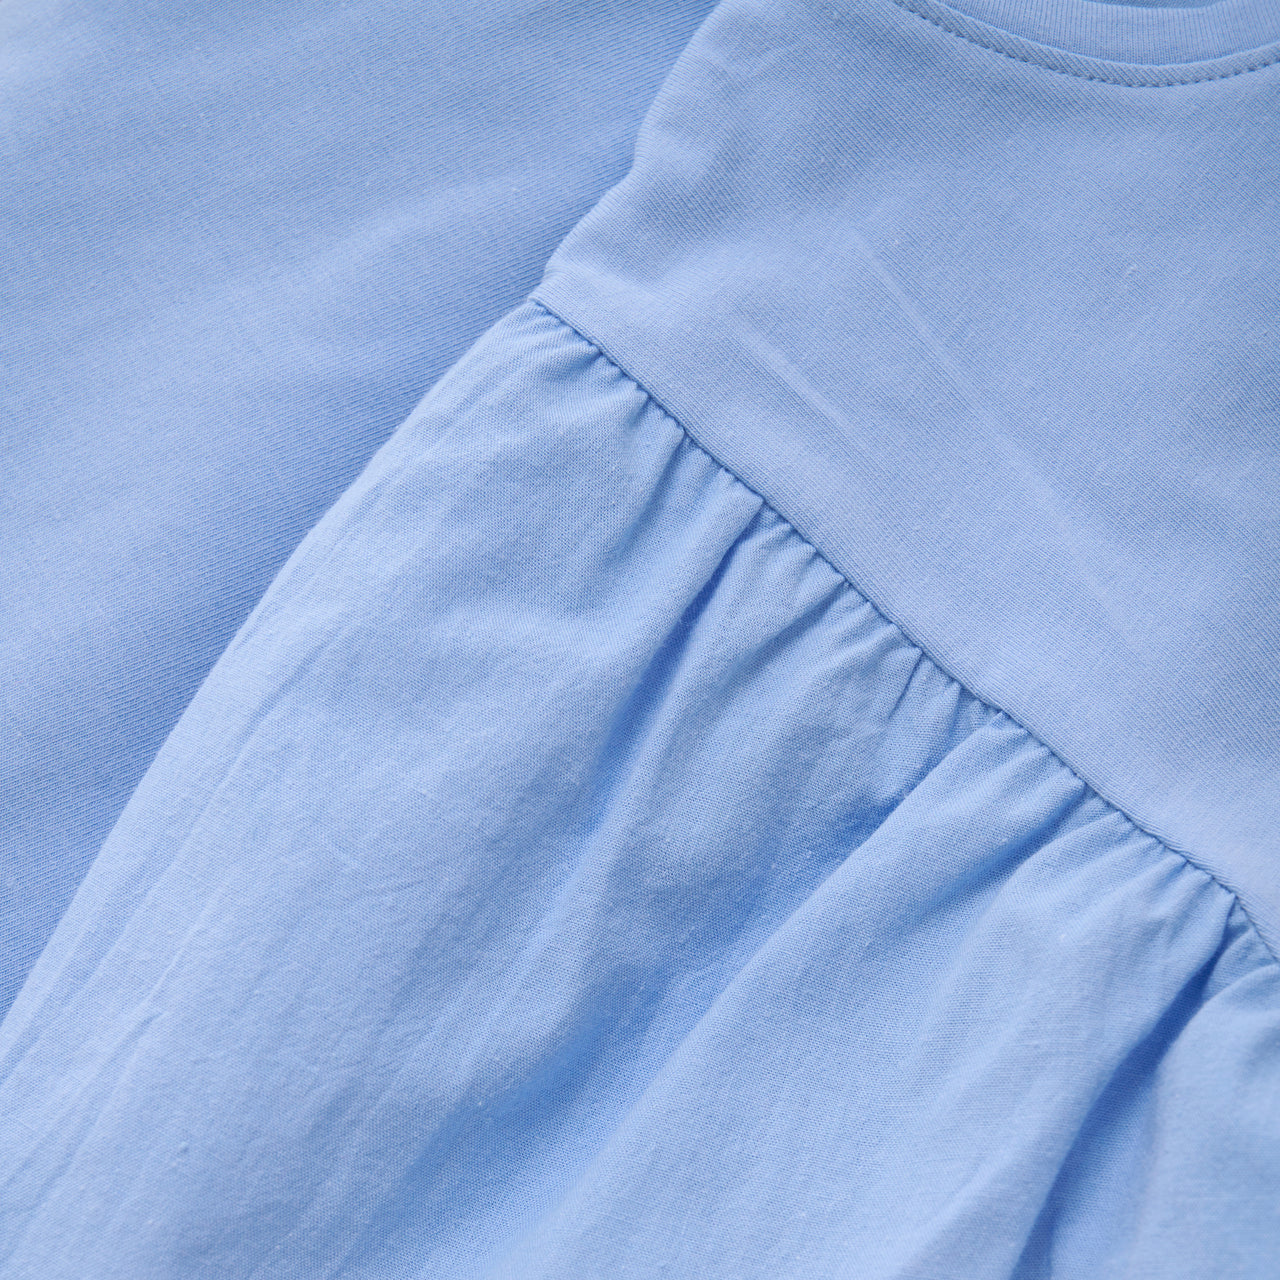 BEL AIR BLUE - Short Sleeve T-Shirt